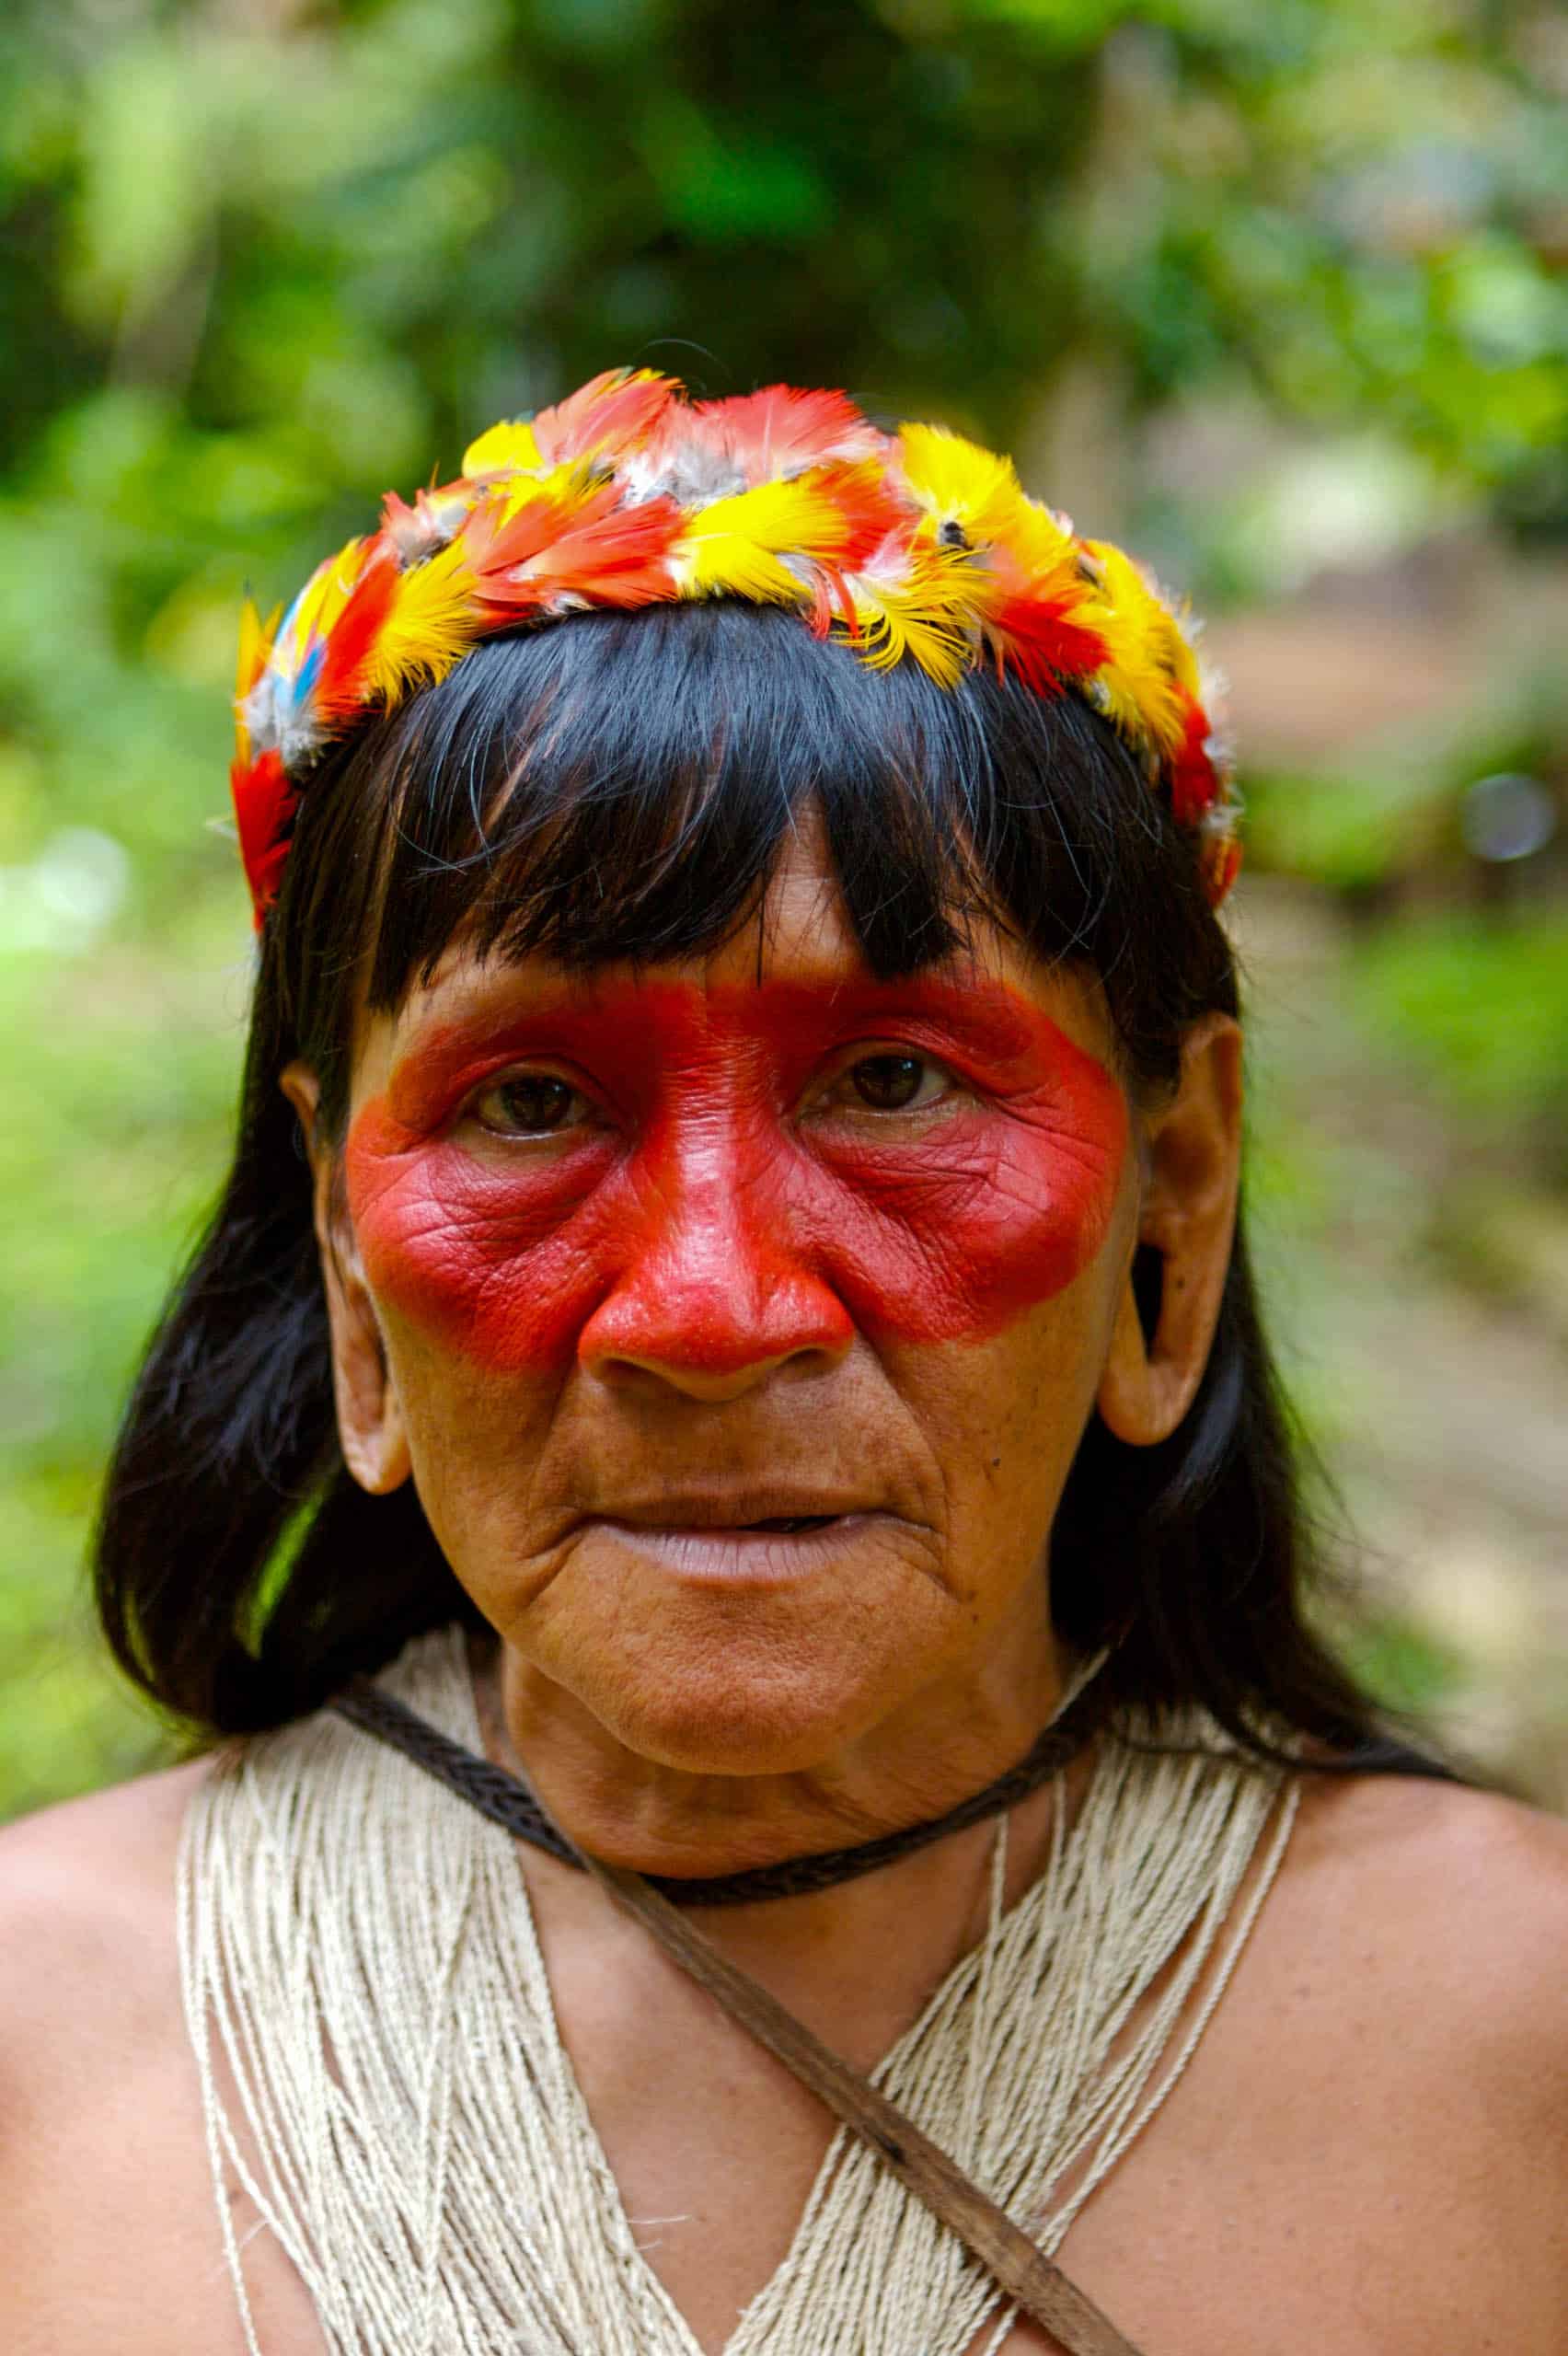 An Amazon native in a rainforest in Ecuador.